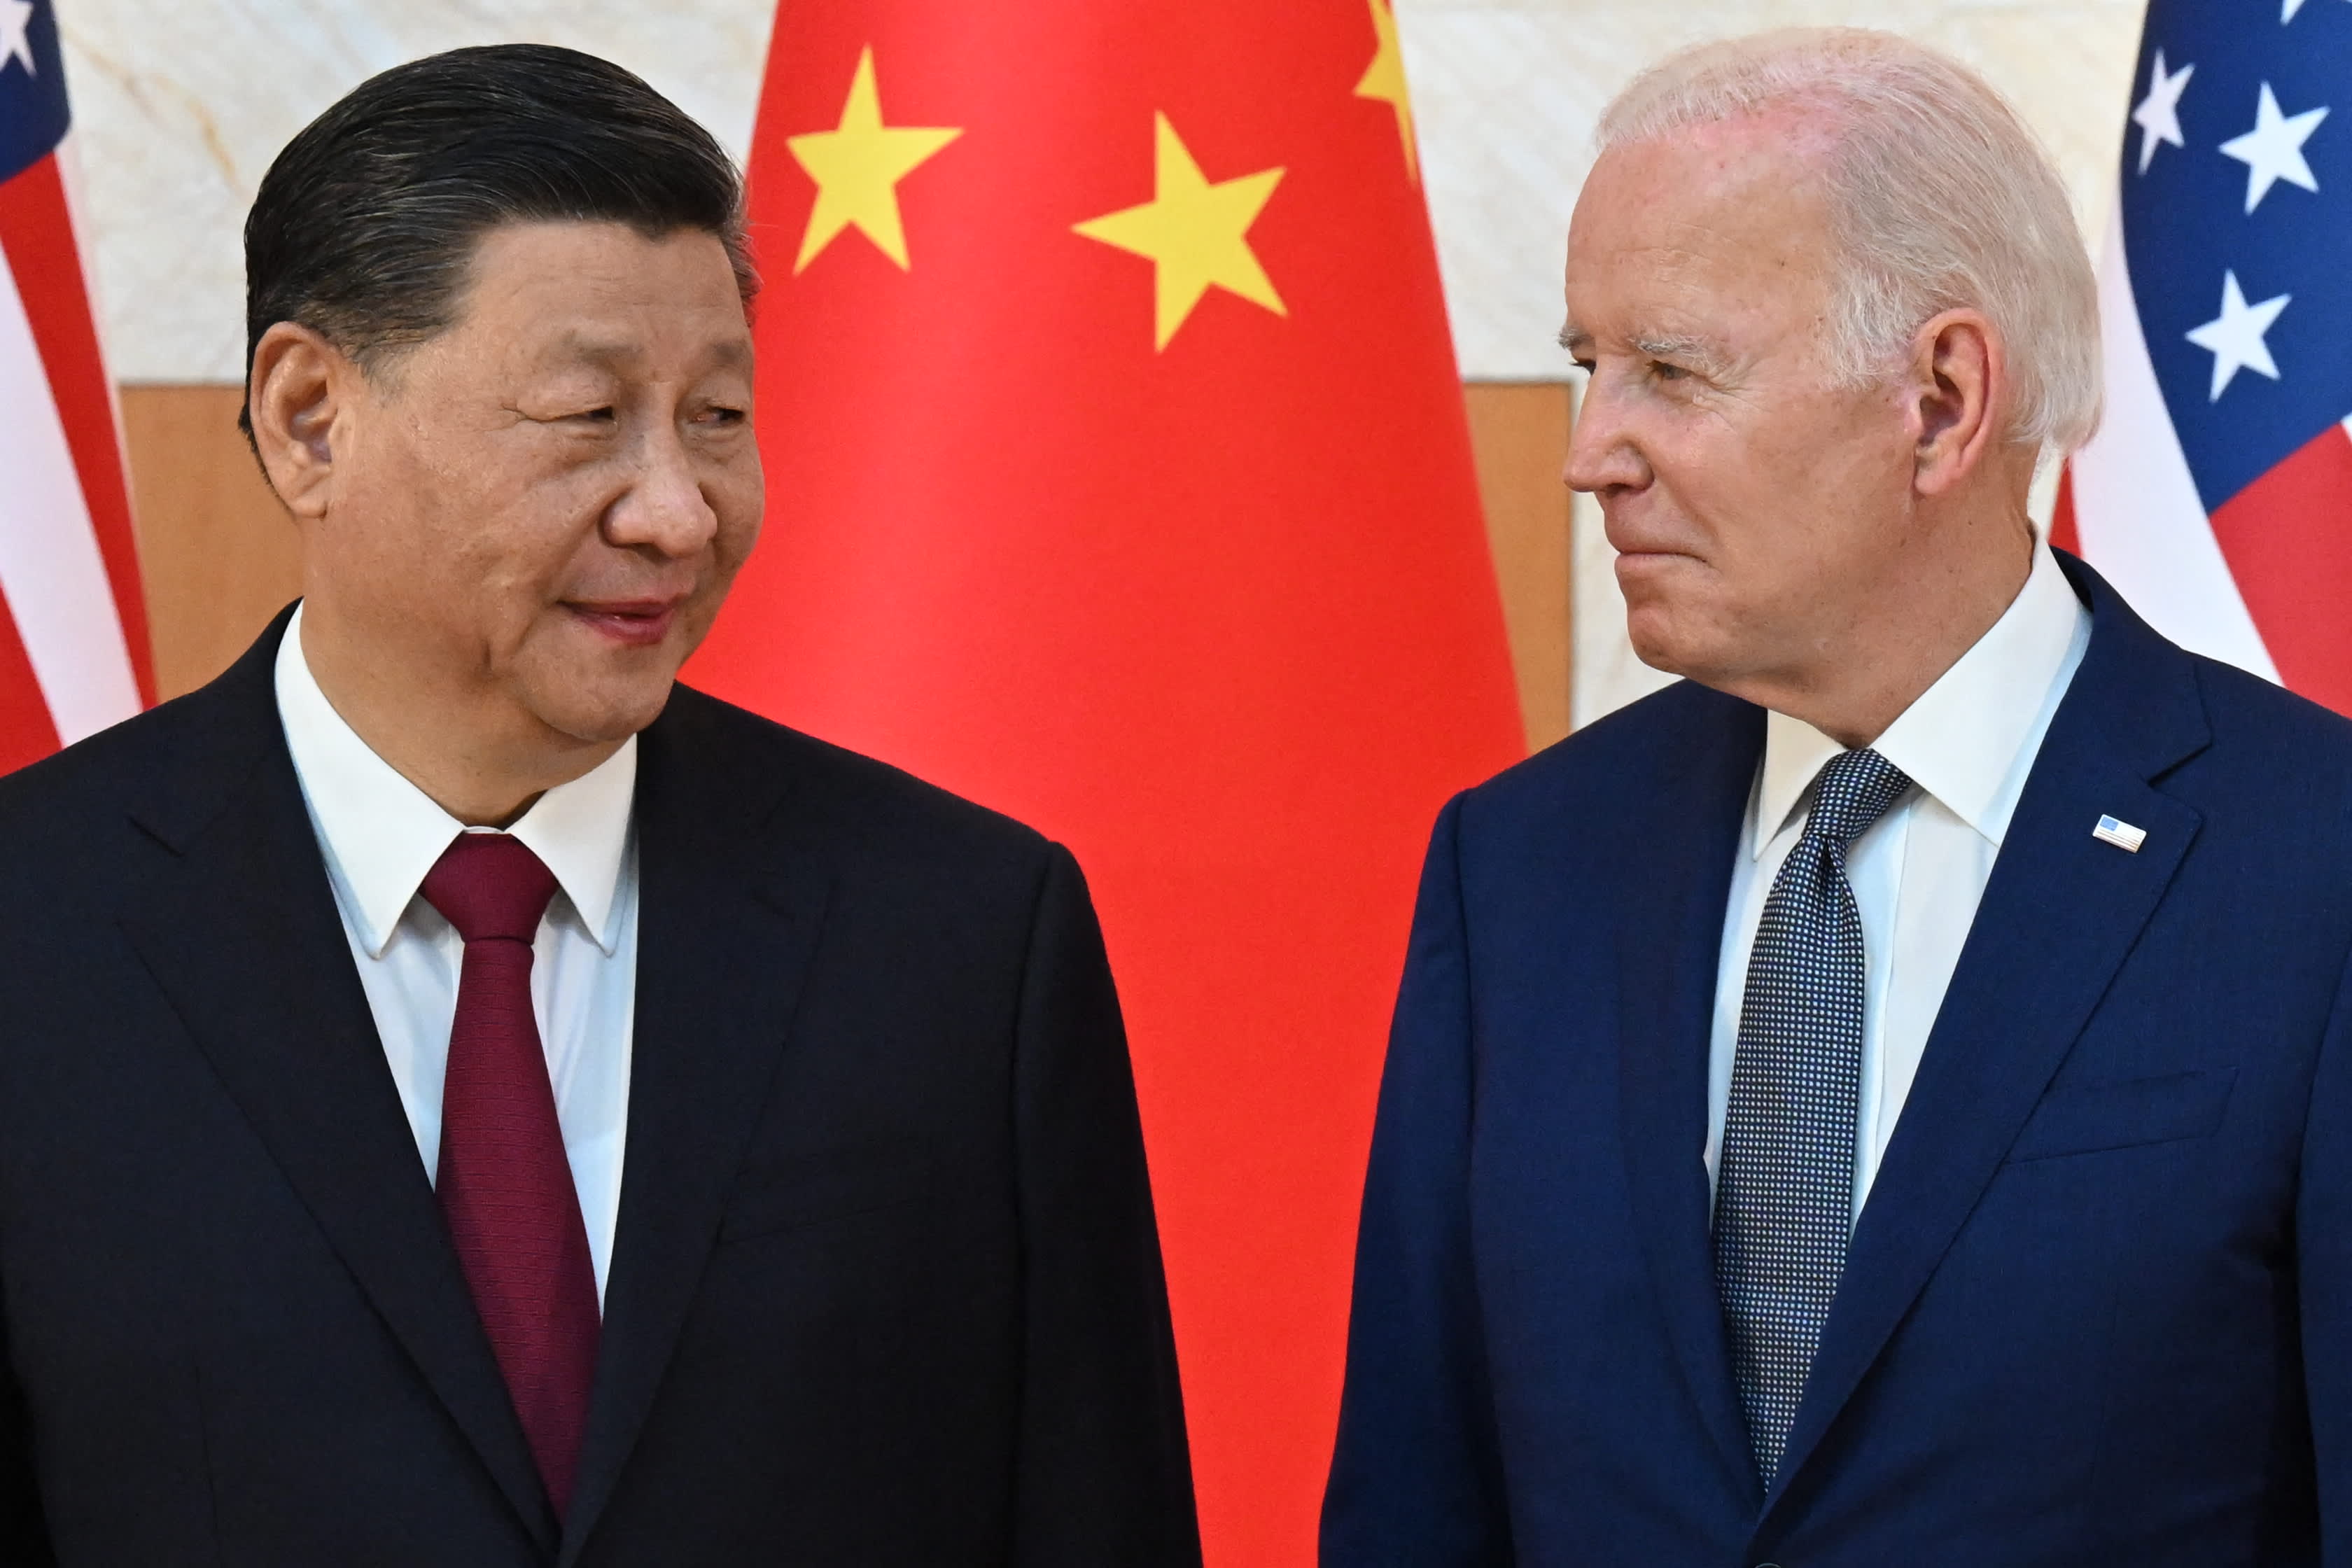 De betrekkingen tussen de VS en China bevinden zich op een gevaarlijk pad zonder vertrouwen aan beide kanten: Roach, Cohen